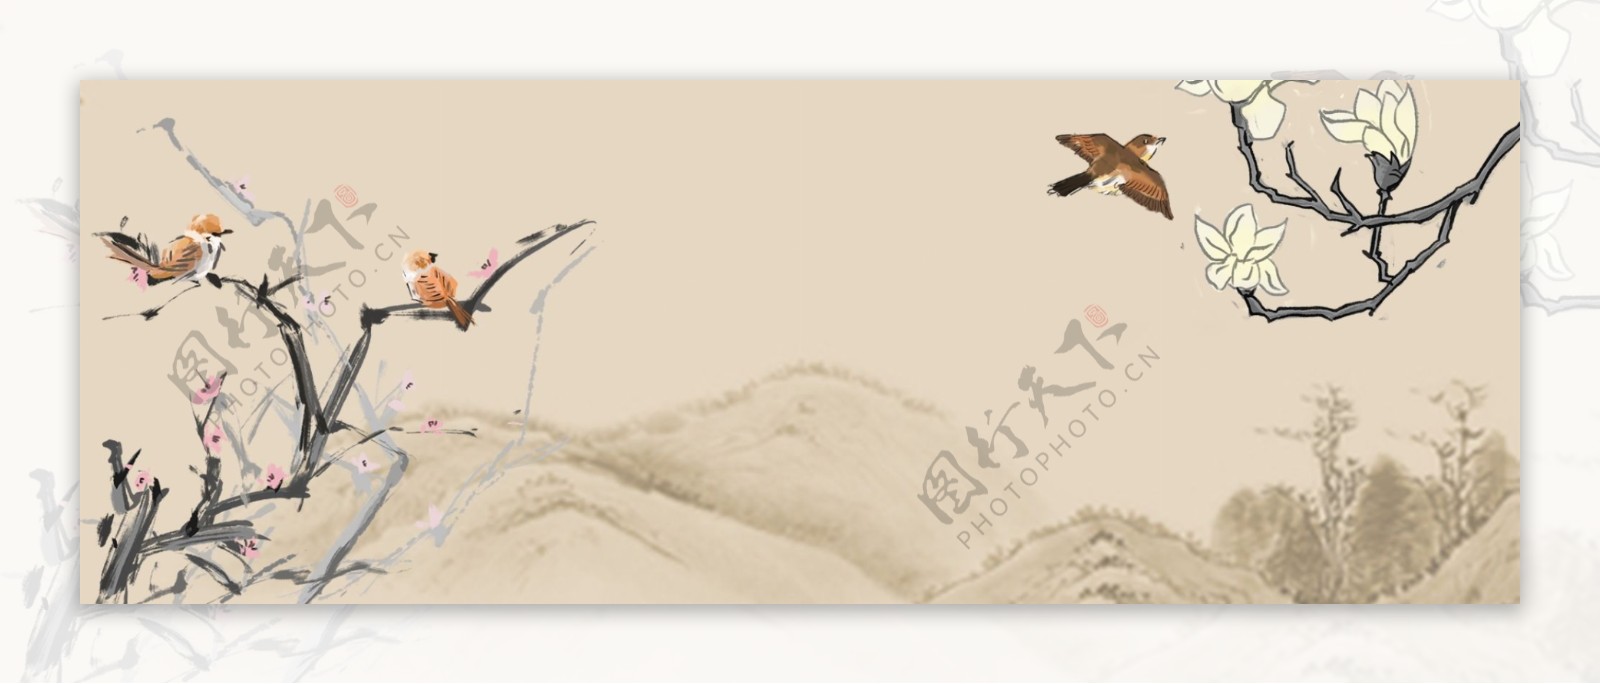 中式古风水墨山水木兰壁纸背景素材